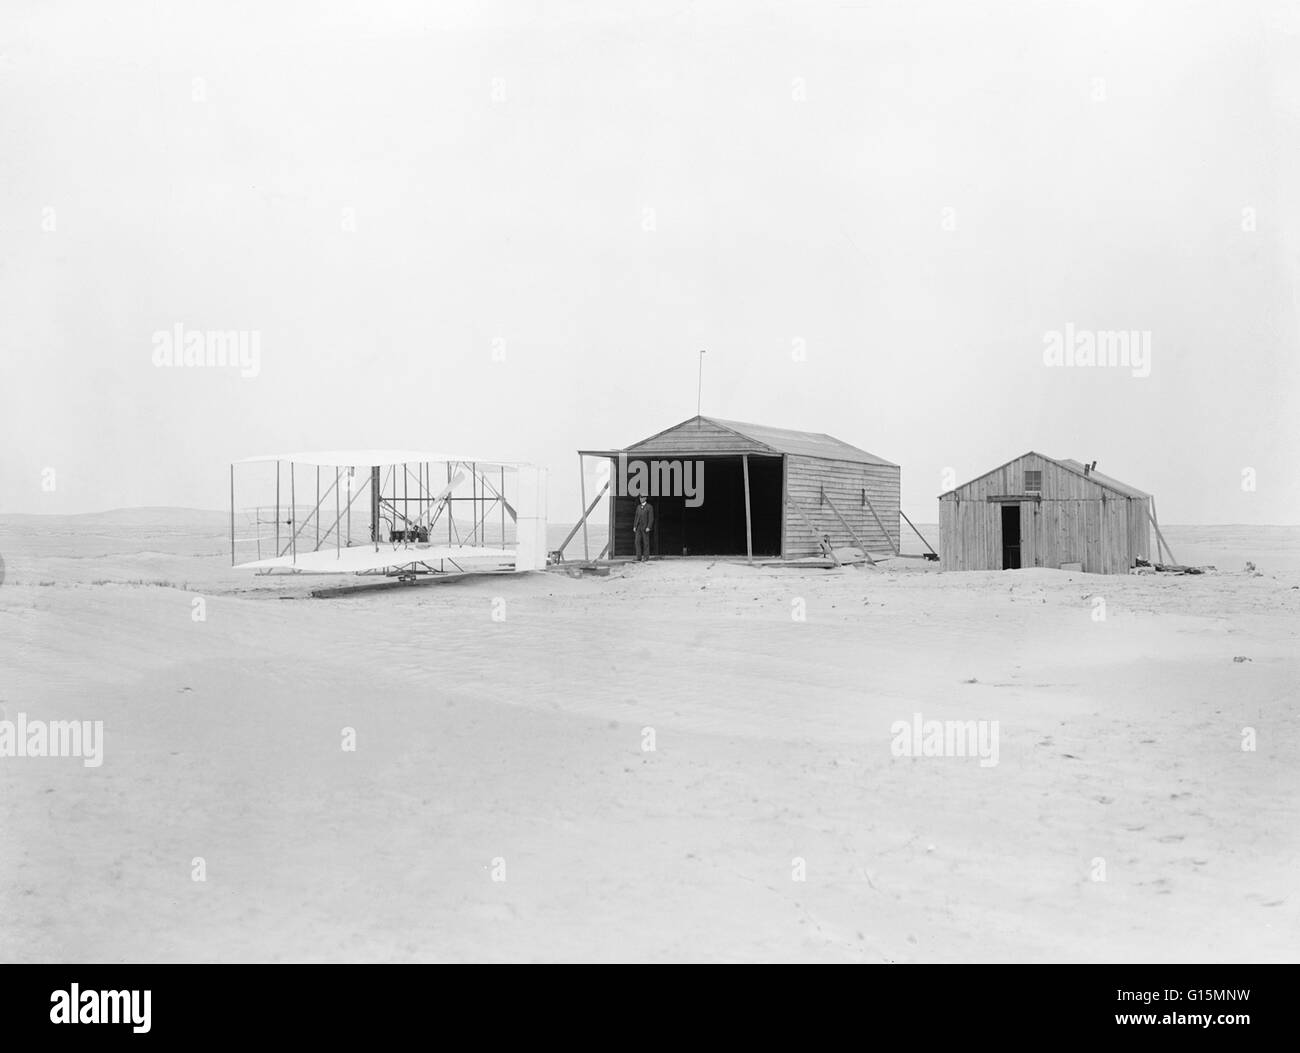 Wilbur o Orville Wright in piedi vicino il Wright Flyer, nel novembre 1903 a Kill Devil Hill, Kitty Hawk, North Carolina, Stati Uniti d'America. Questa fotografia è stata scattata un mese prima del primo volo il 17 dicembre, 1903. L'hangar e officina nella foto Foto Stock